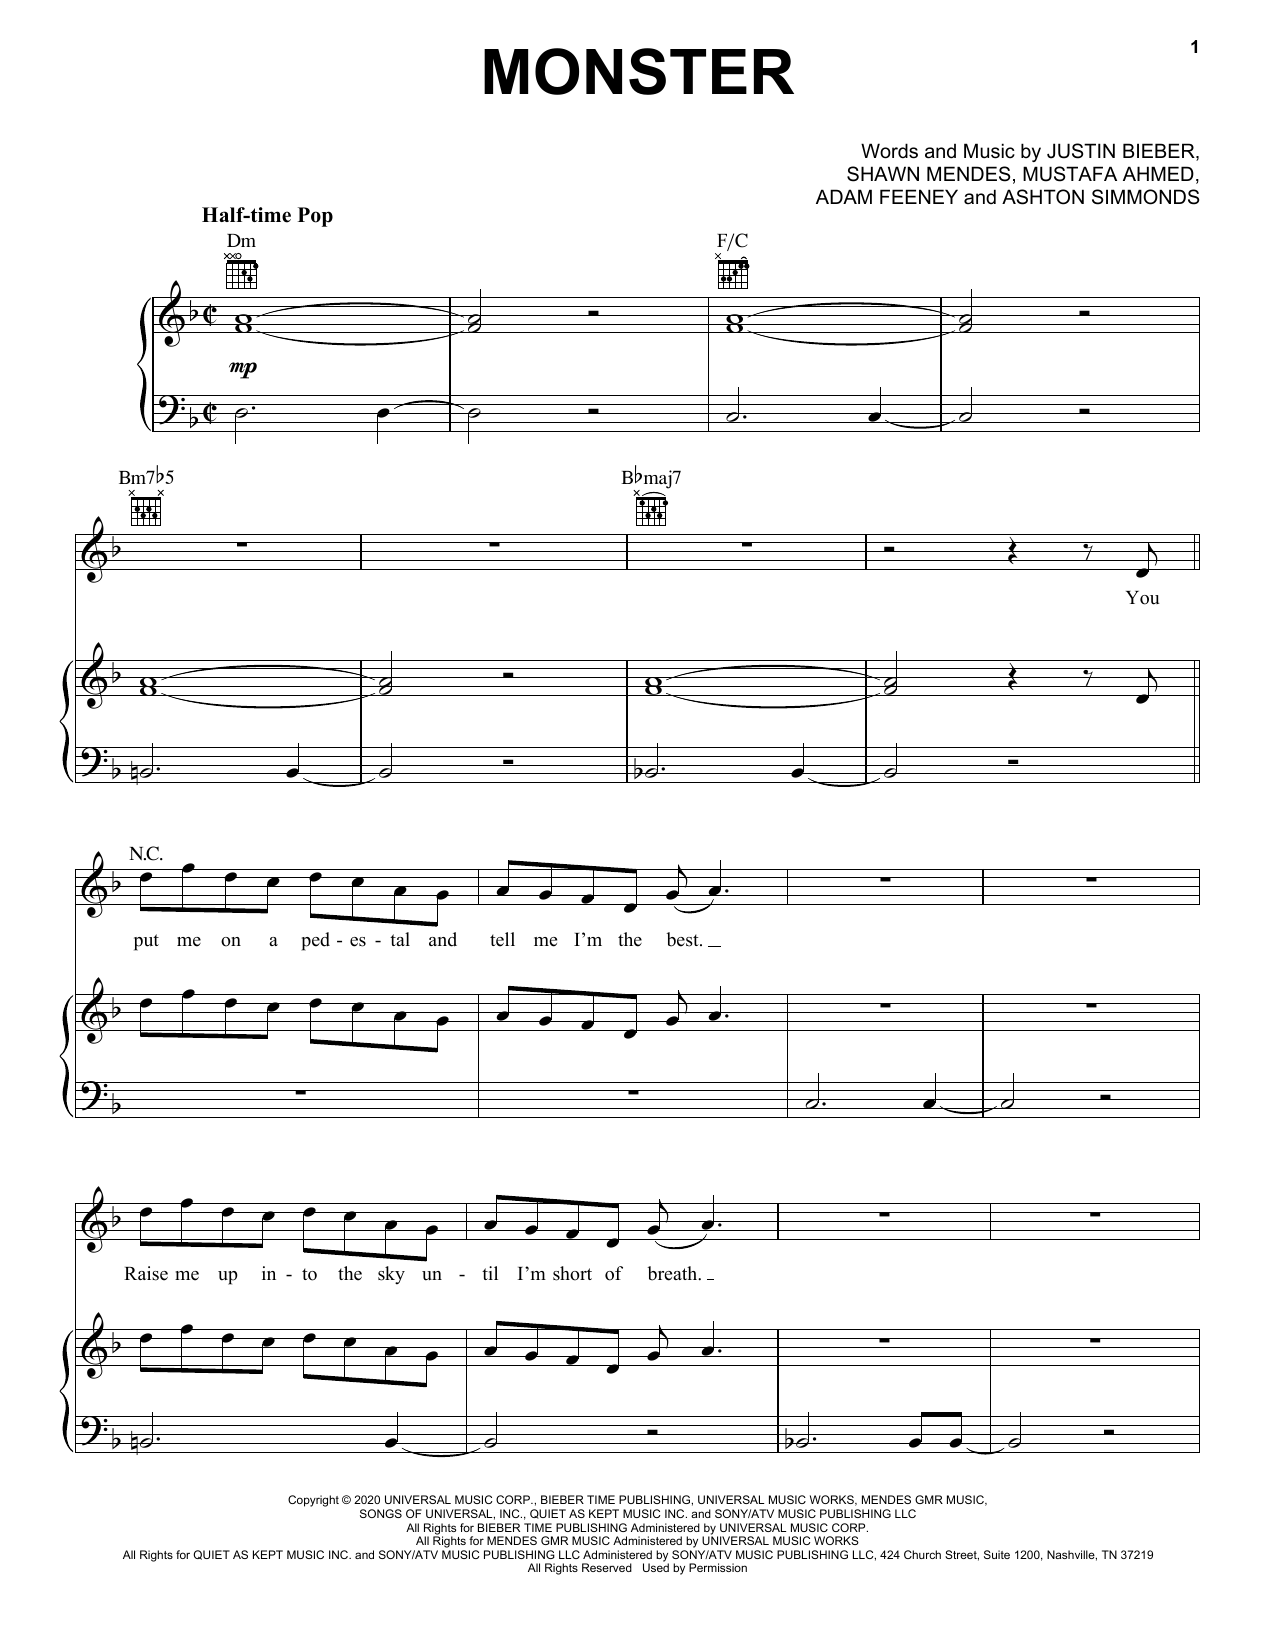 Shawn Mendes & Justin Bieber Monster Sheet Music Notes & Chords for Ukulele - Download or Print PDF